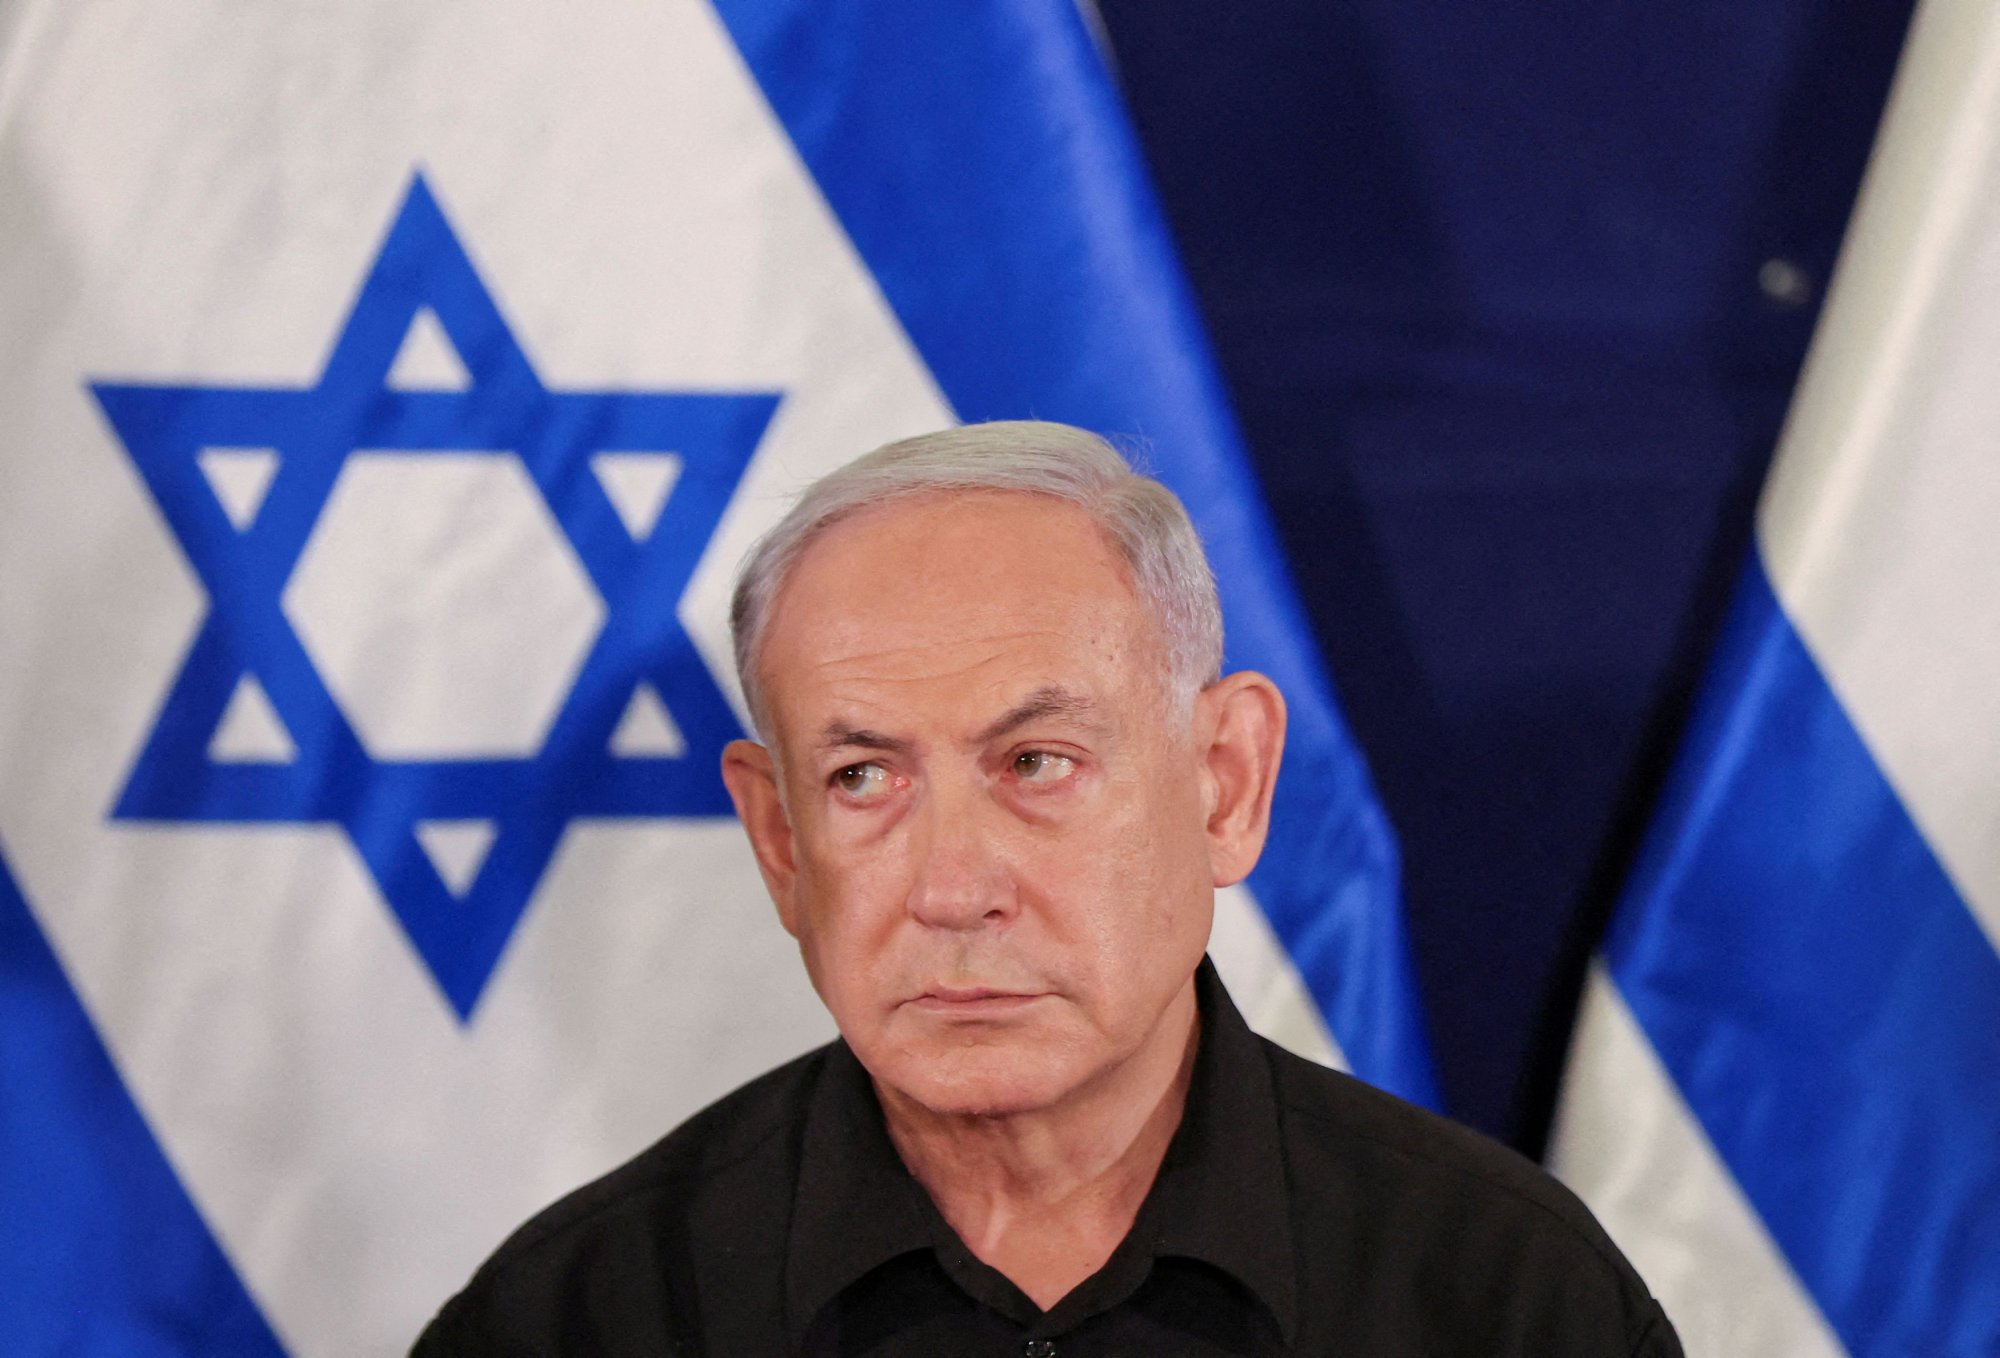 Οι Ισραηλινοί γυρίζουν «την πλάτη» στο Νετανιάχου - Μόνο το 15% τον θέλει πρωθυπουργό μετά τον πόλεμο